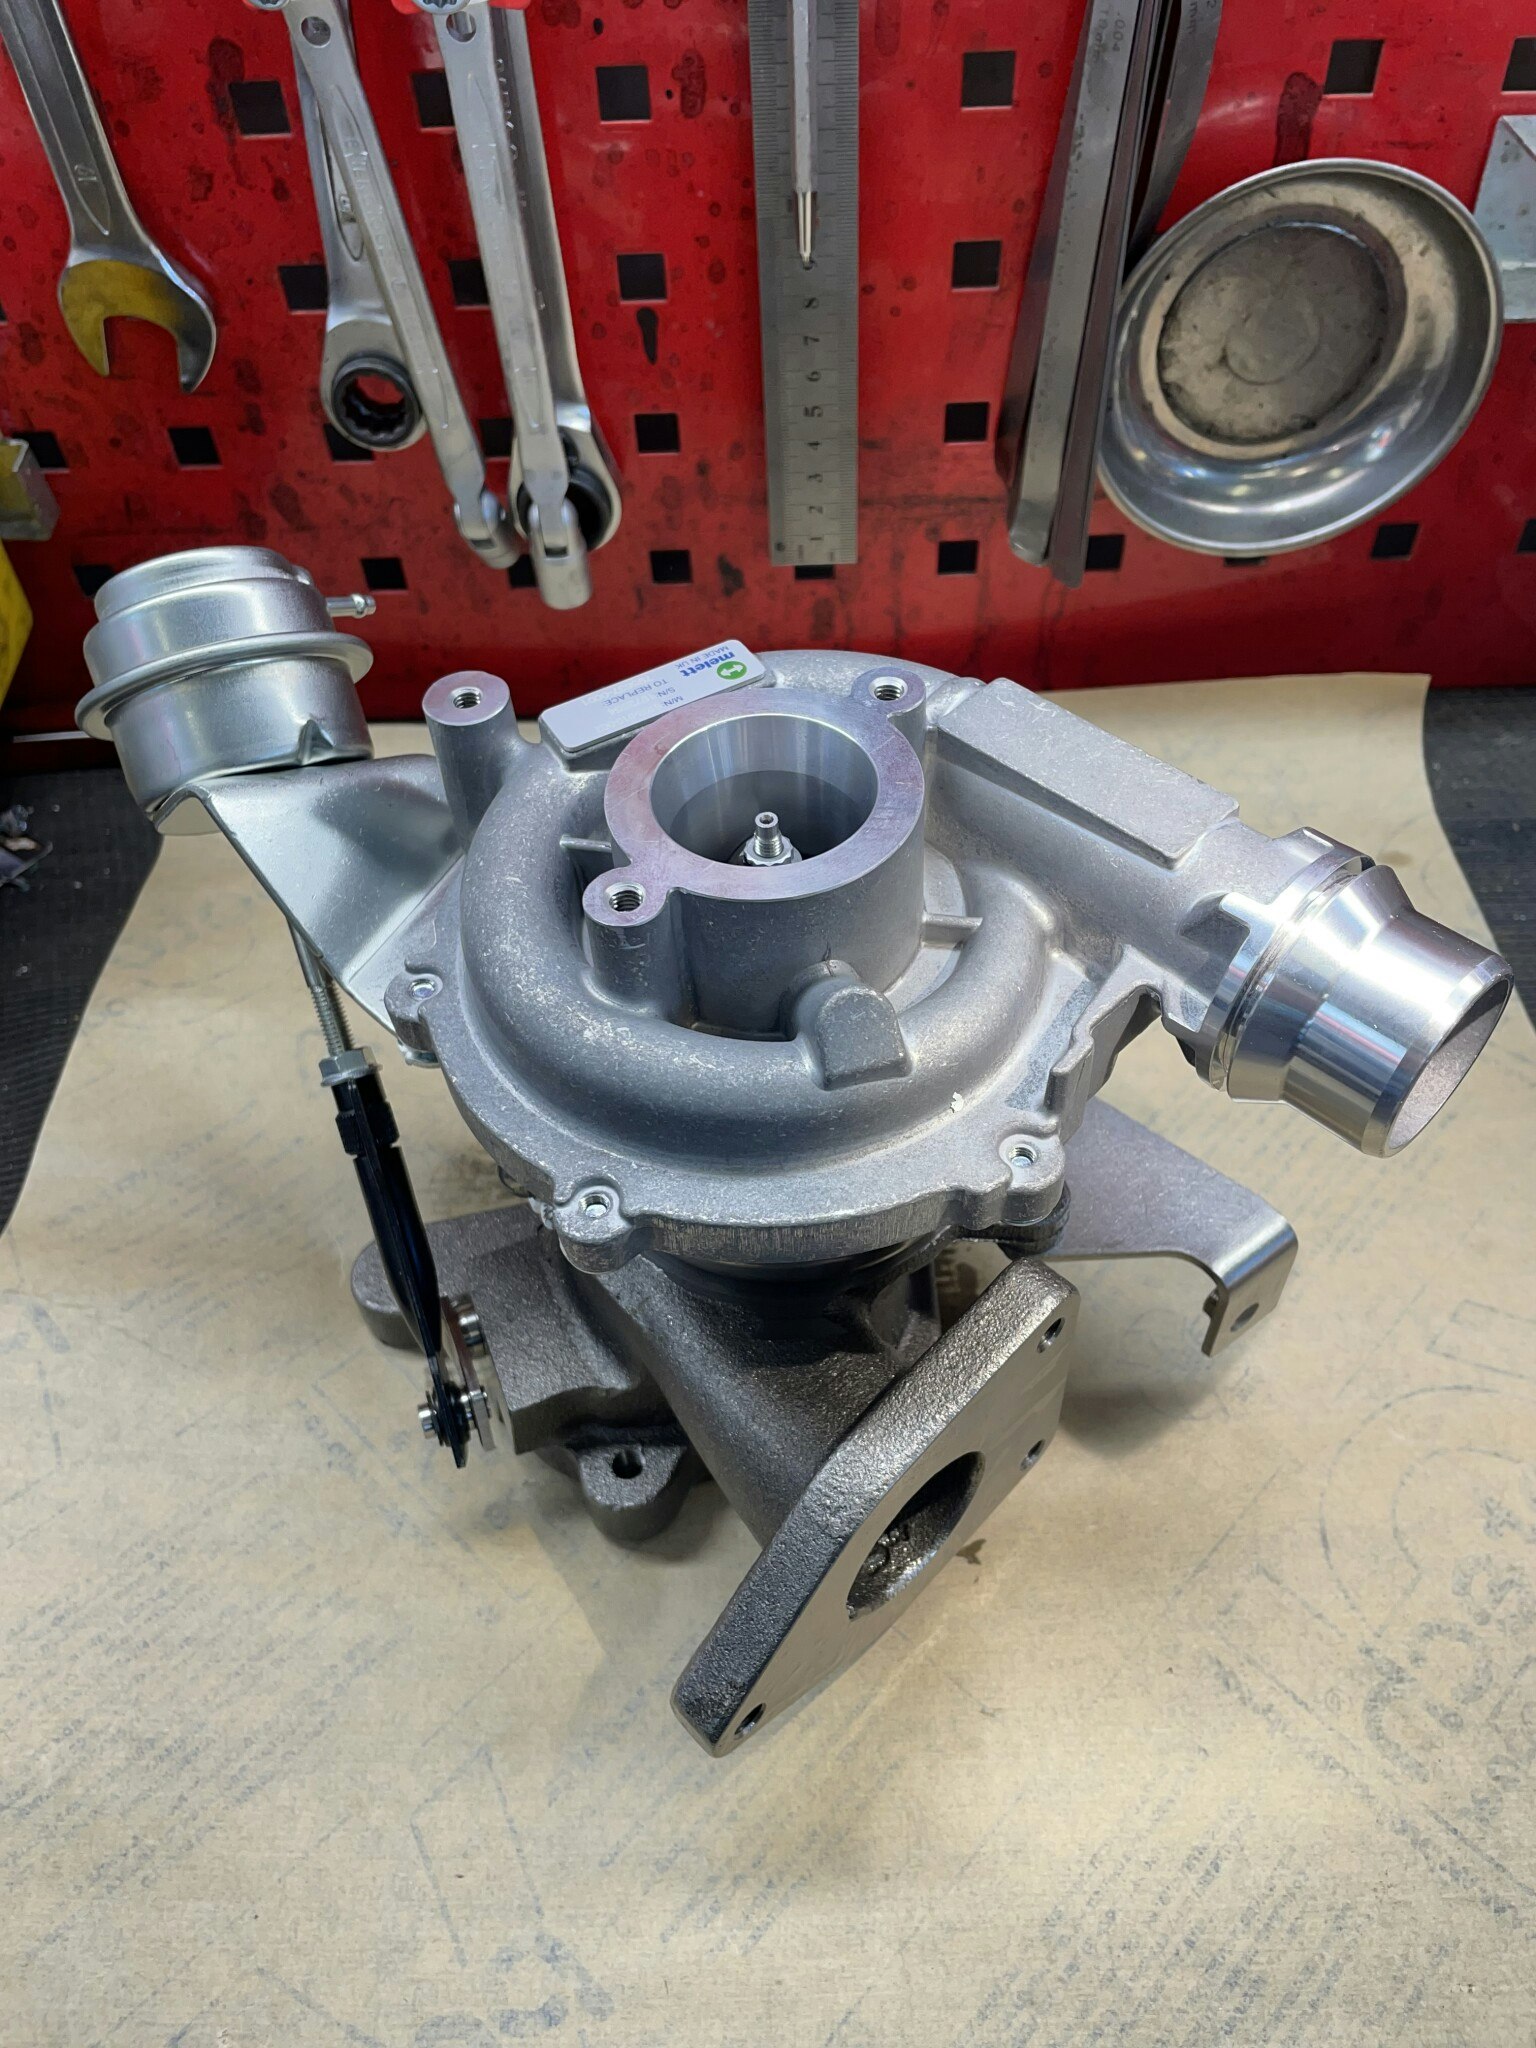 Turbo fabriksny Melett original 2.3dCi motorn